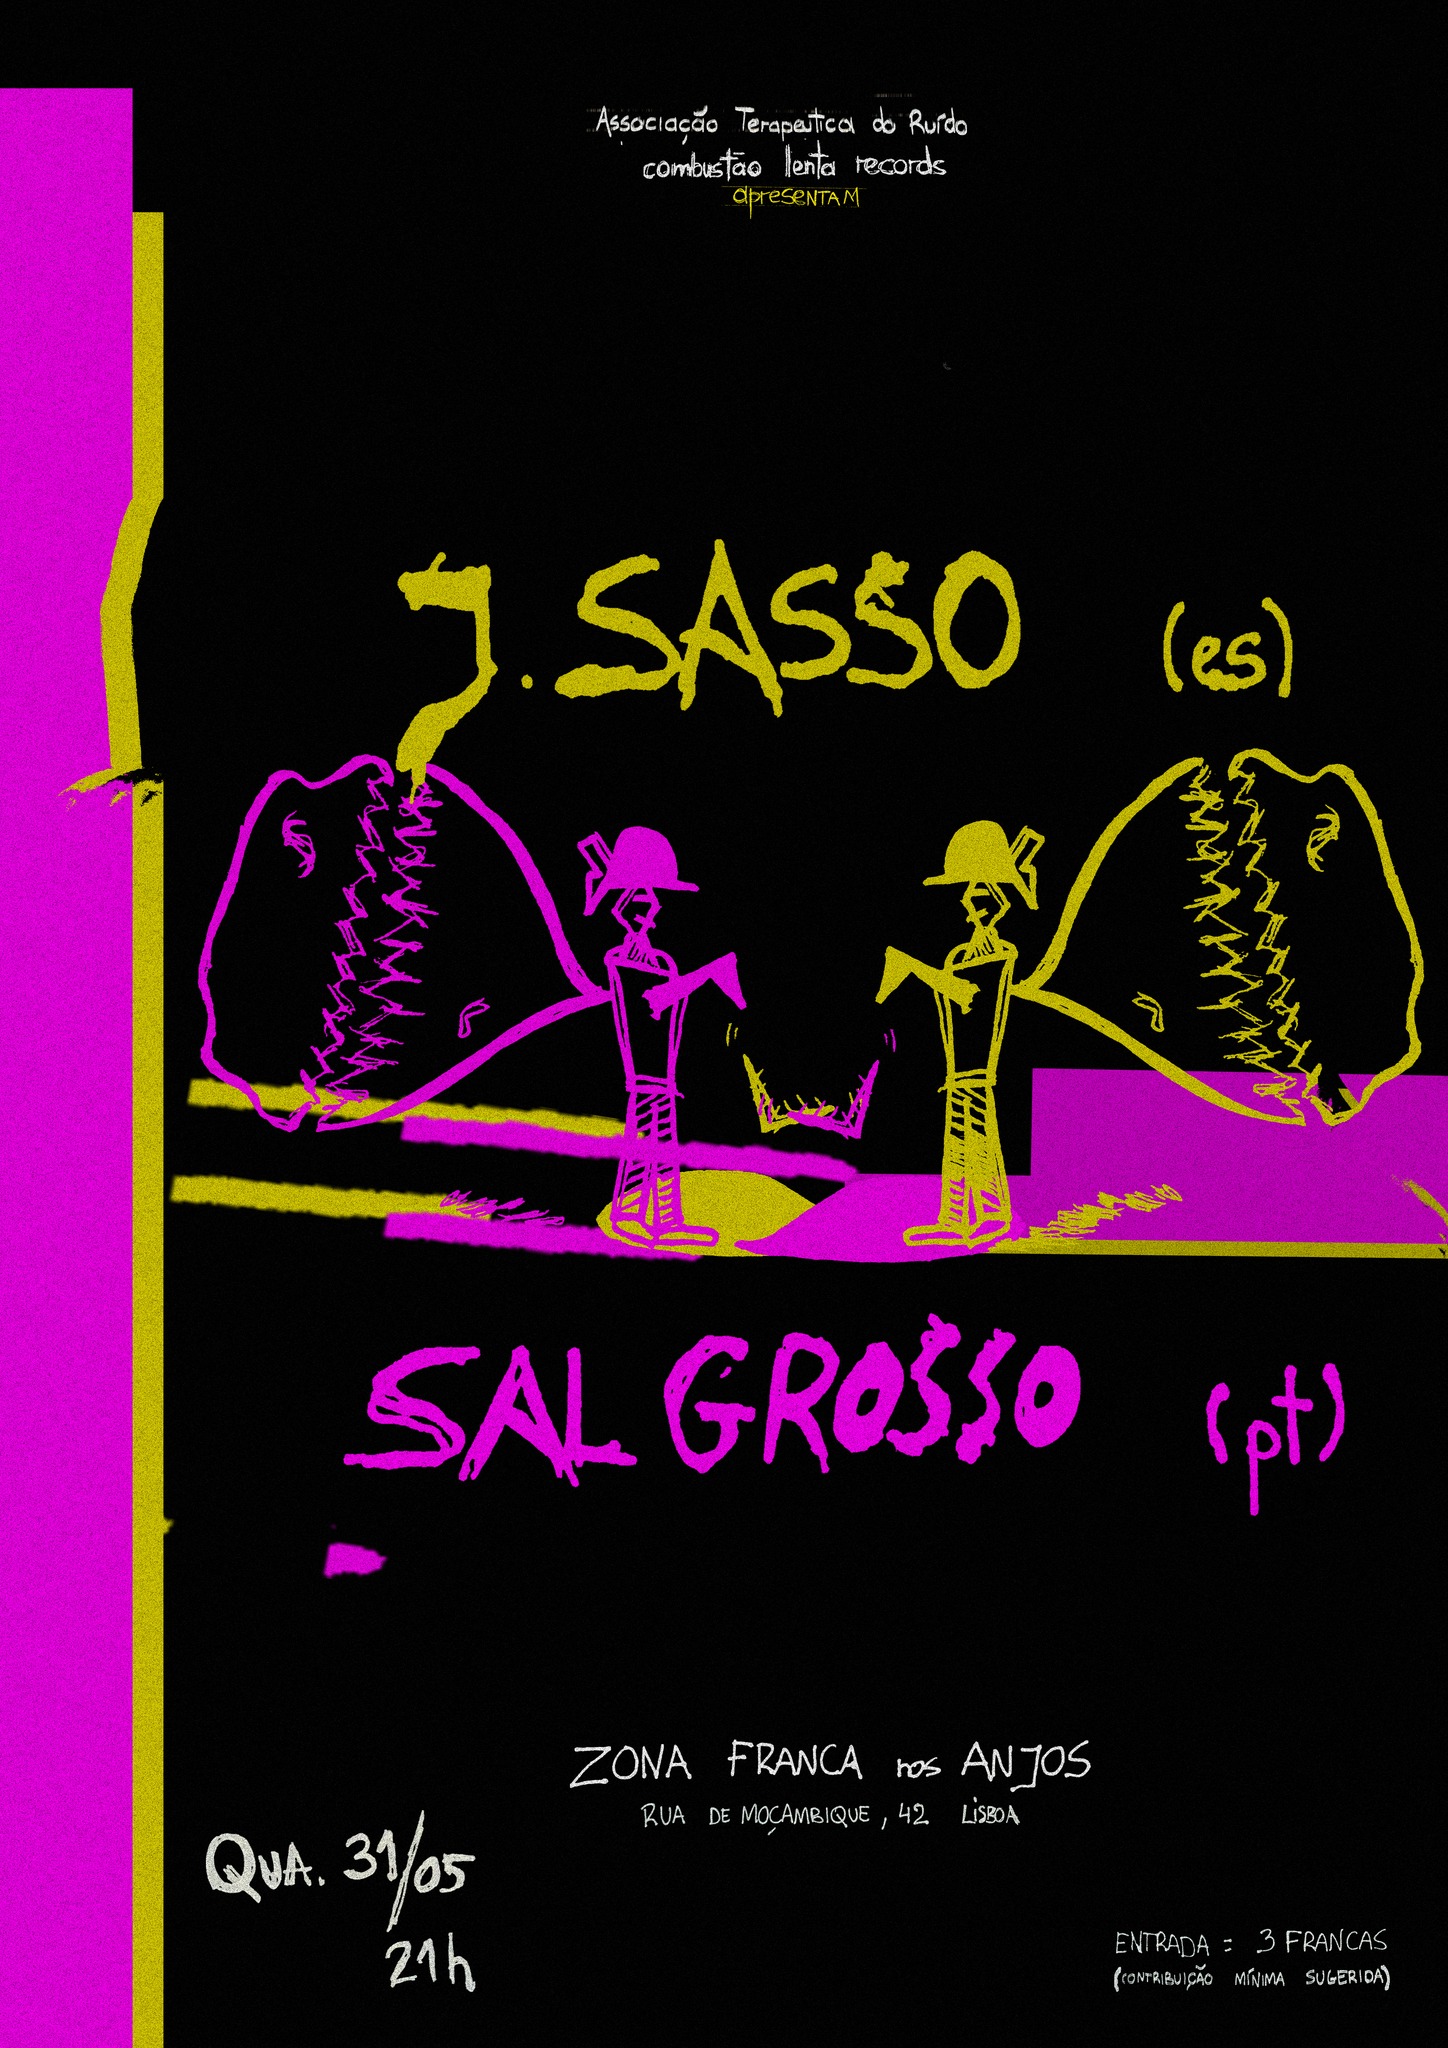 ATR & combustão lenta records apresentam: J.Sasso + Sal Grosso